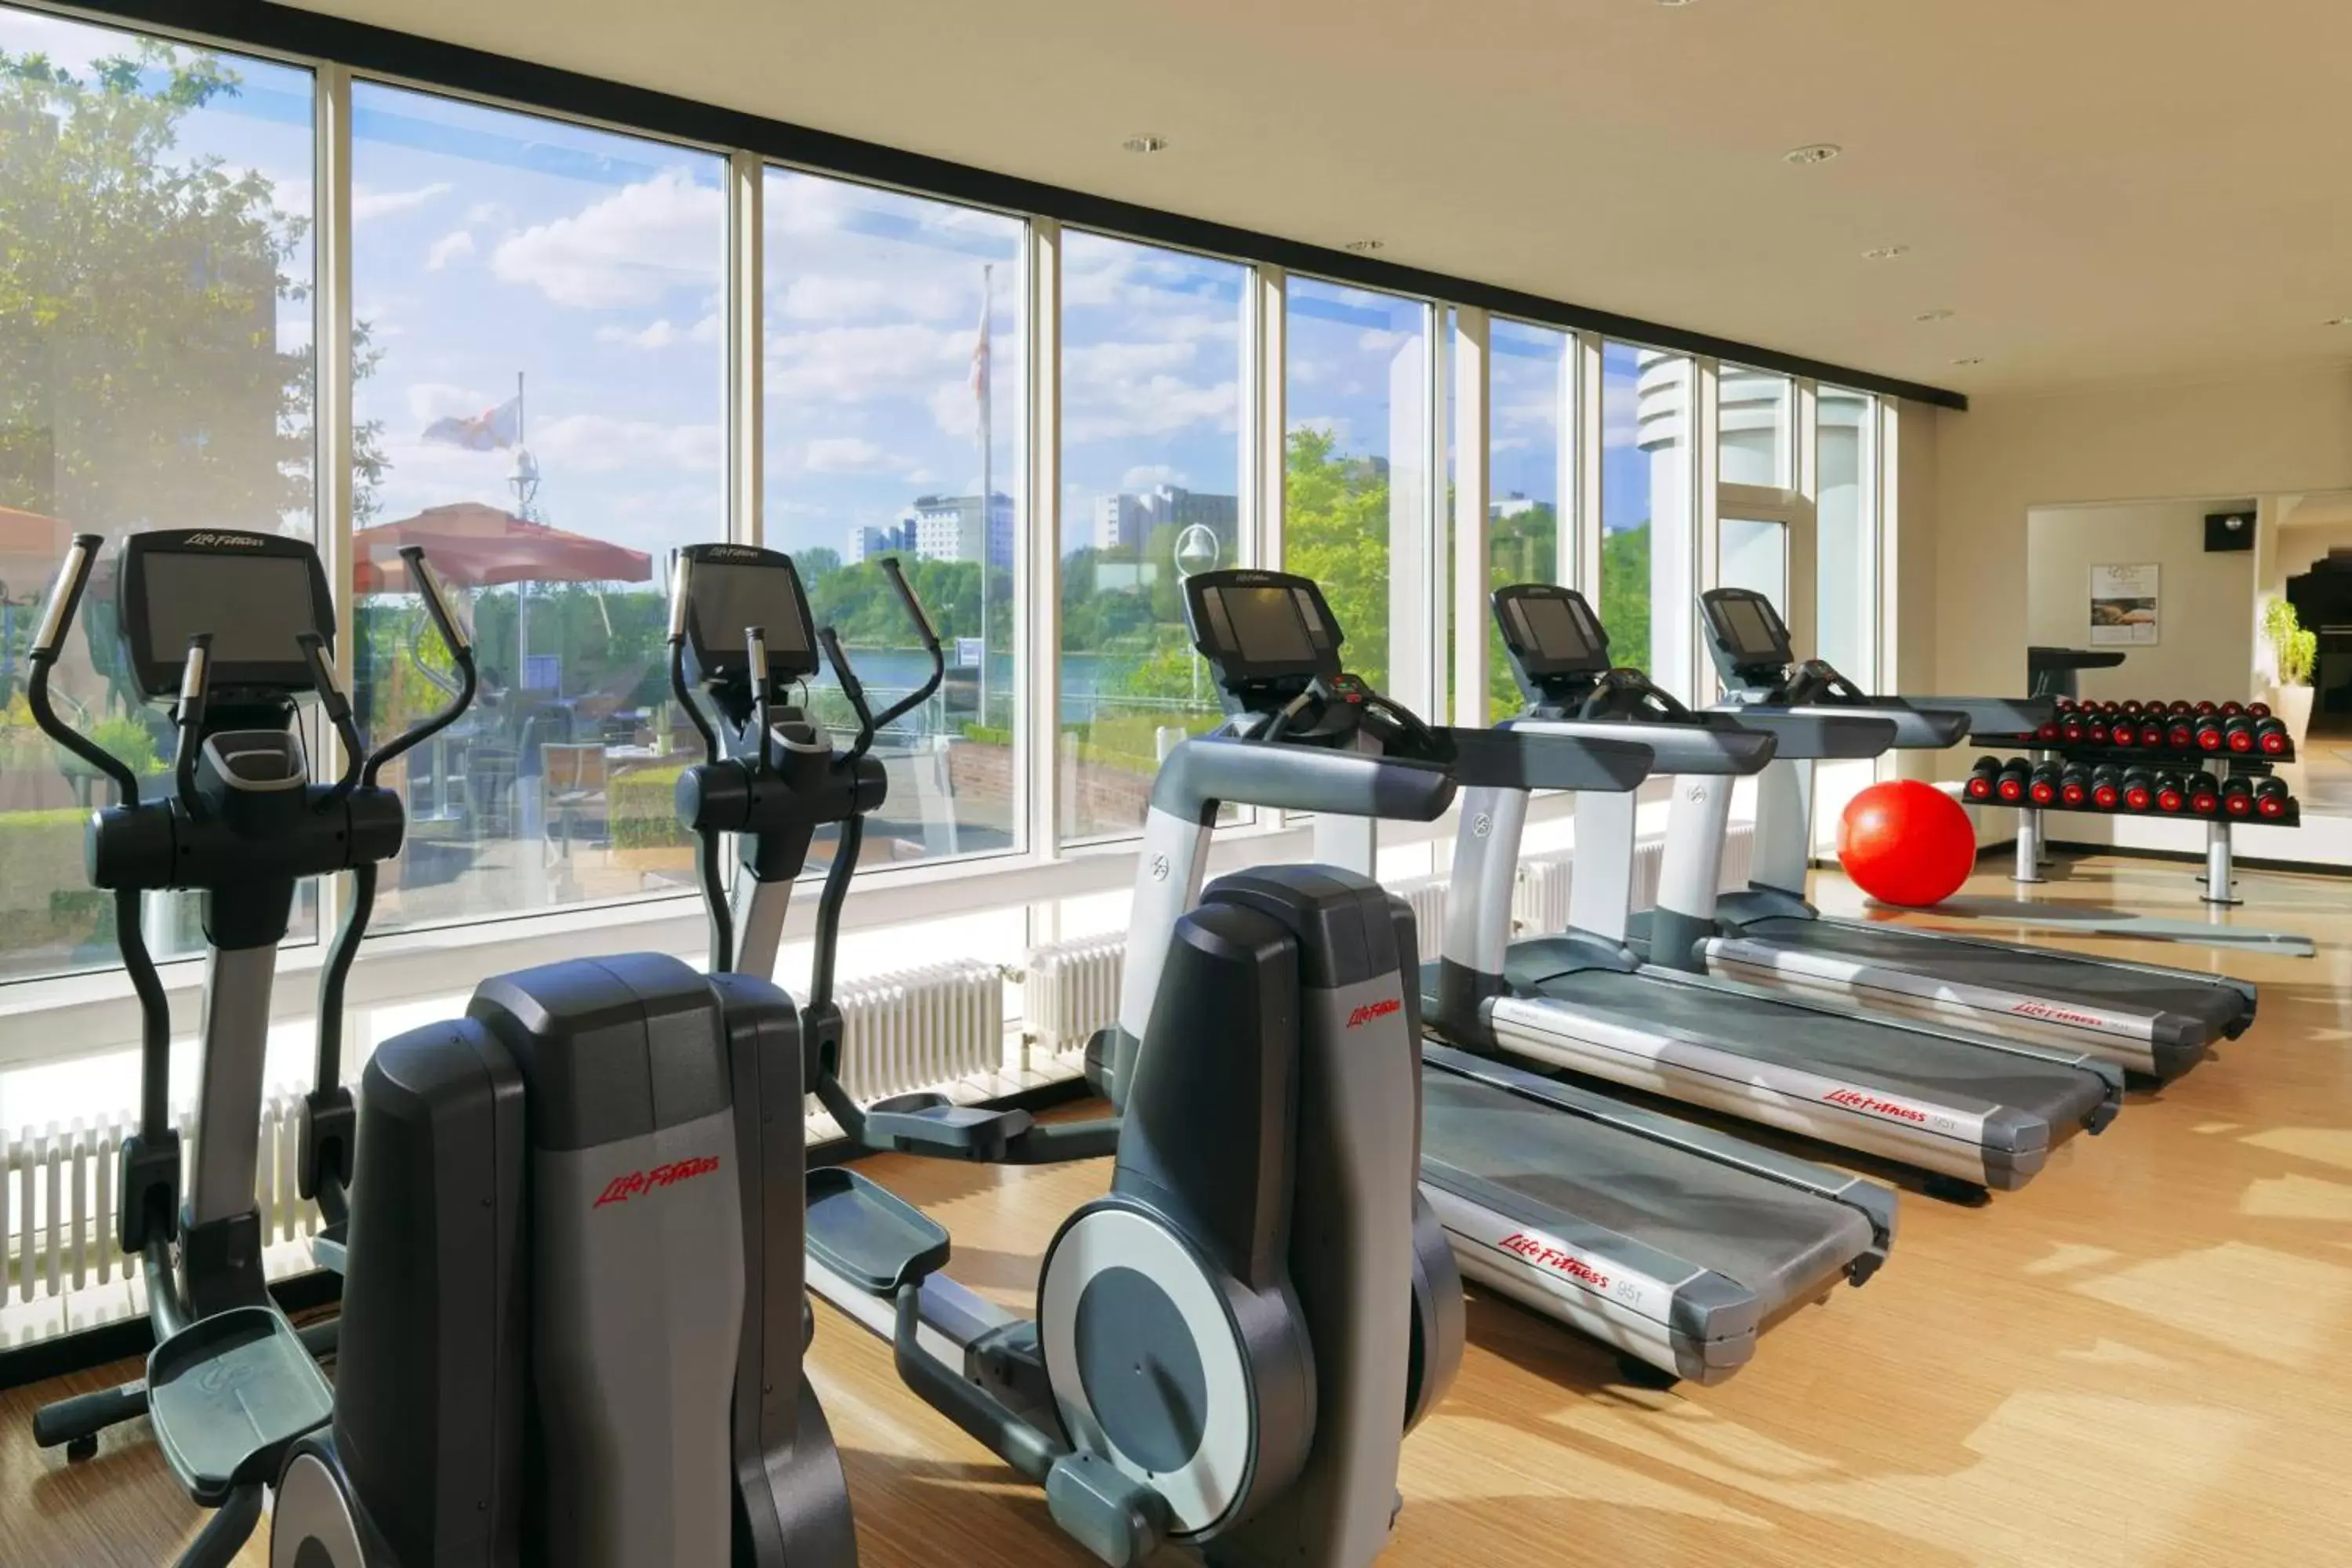 Fitness centre/facilities, Fitness Center/Facilities in Heidelberg Marriott Hotel